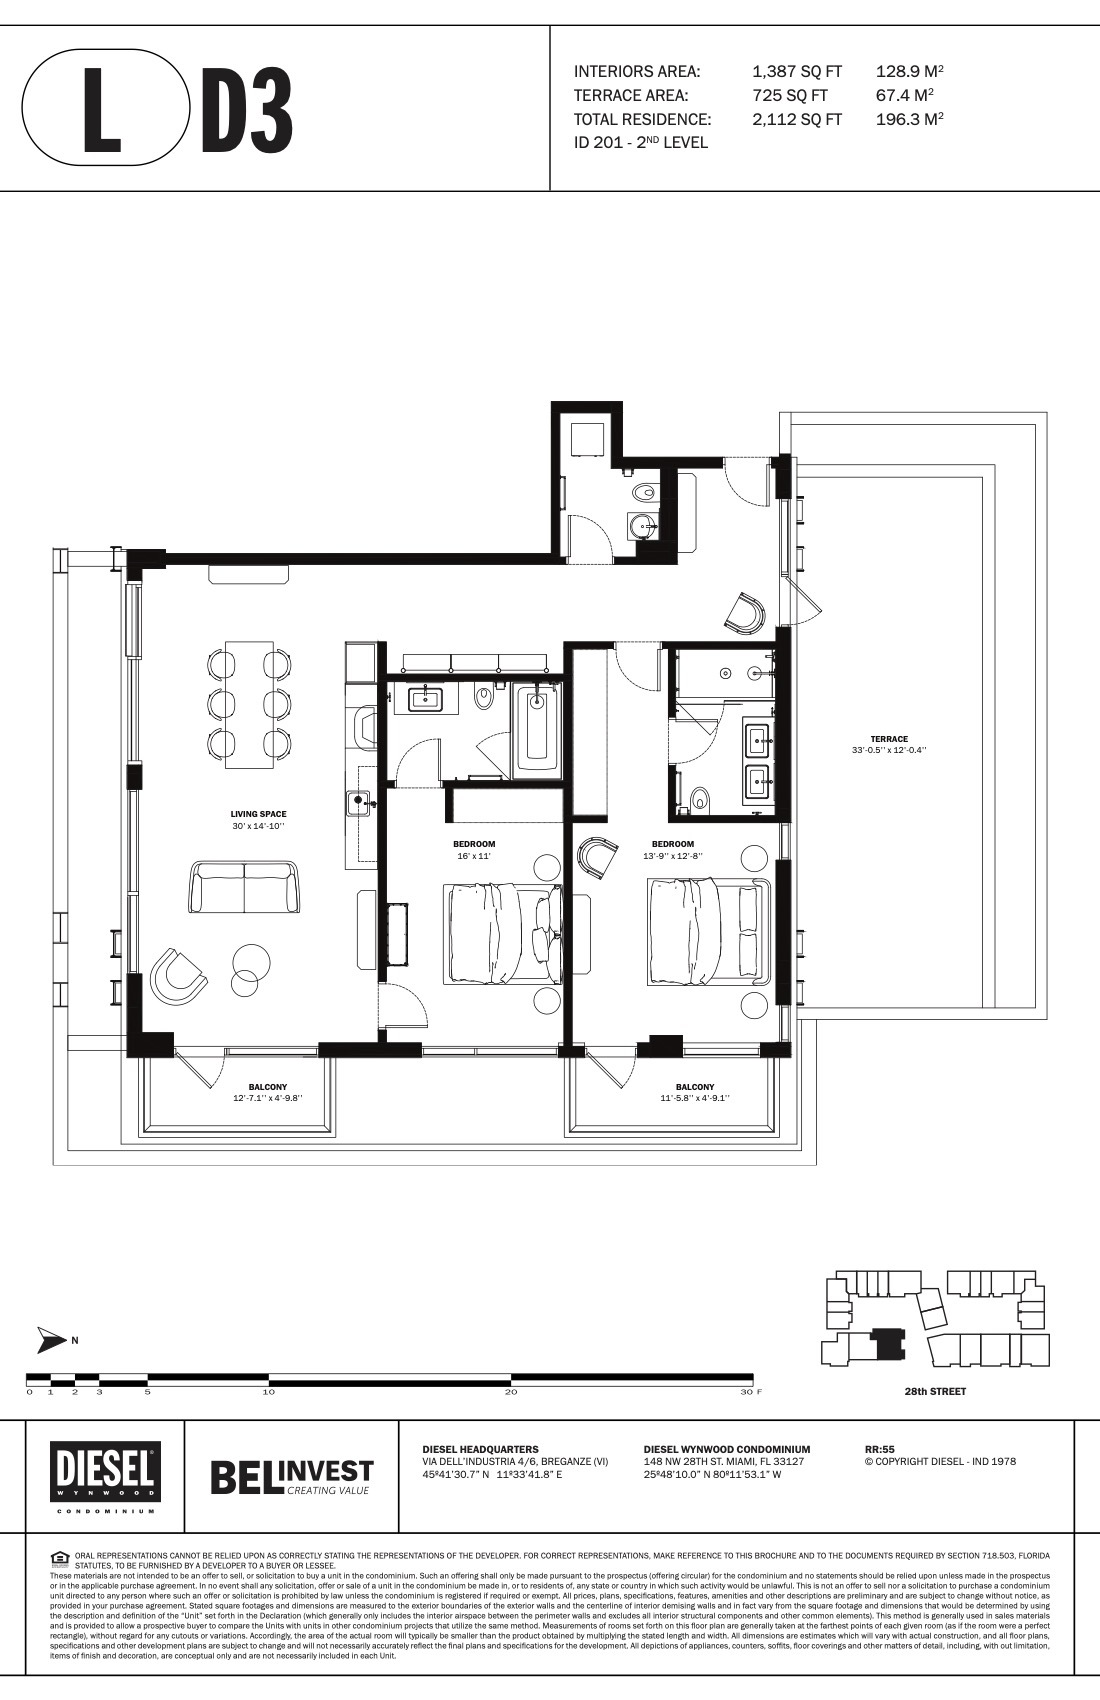 Floor Plan for Diesel Wynwood Floorplans, L D3